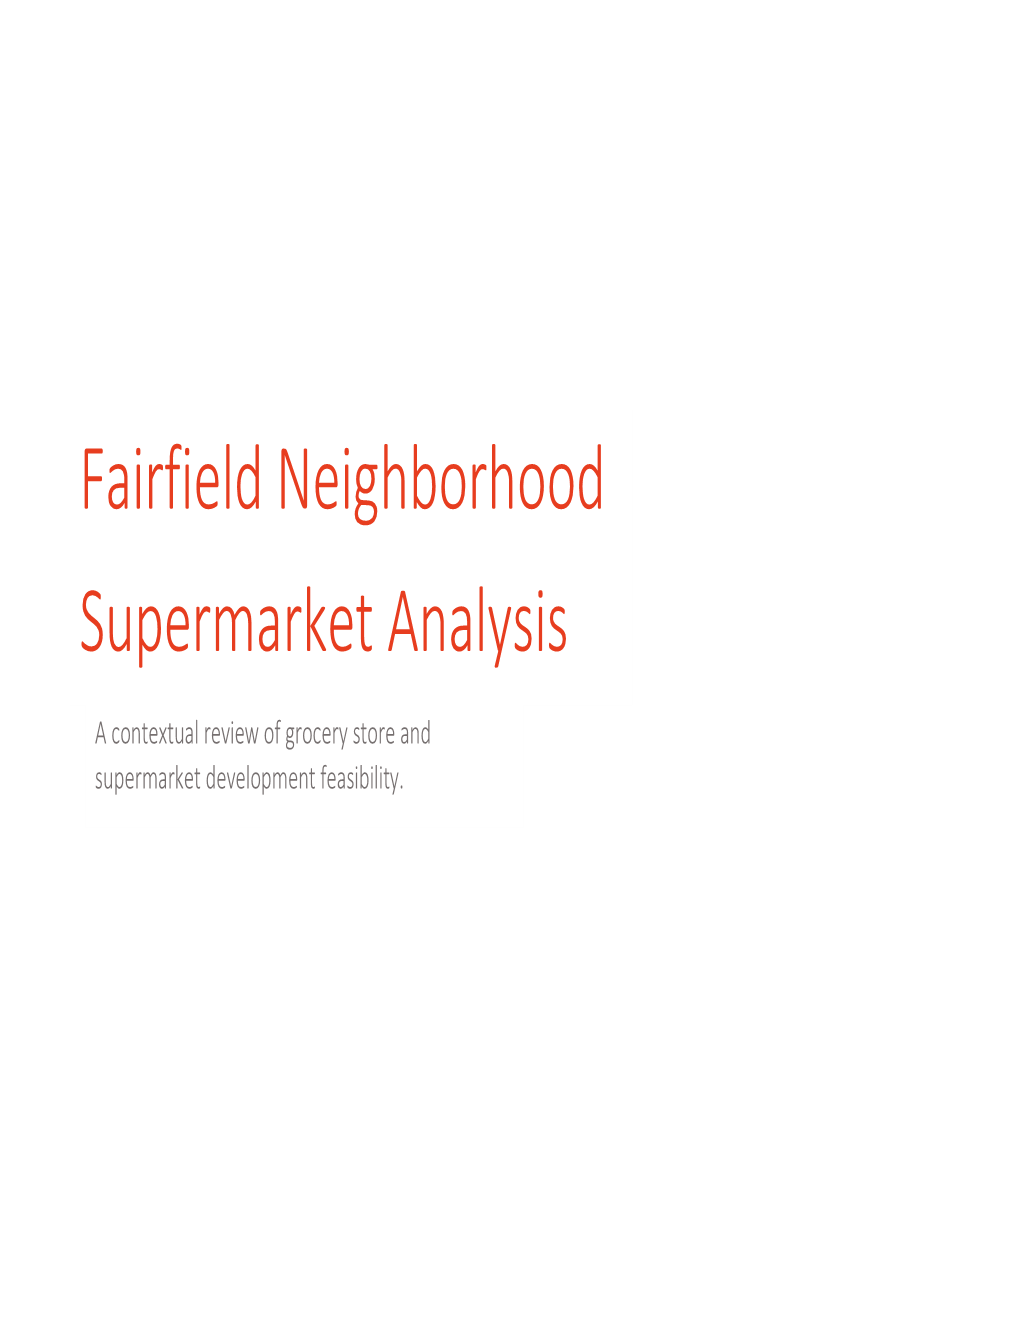 Fairfield Neighborhood Supermarket Analysis